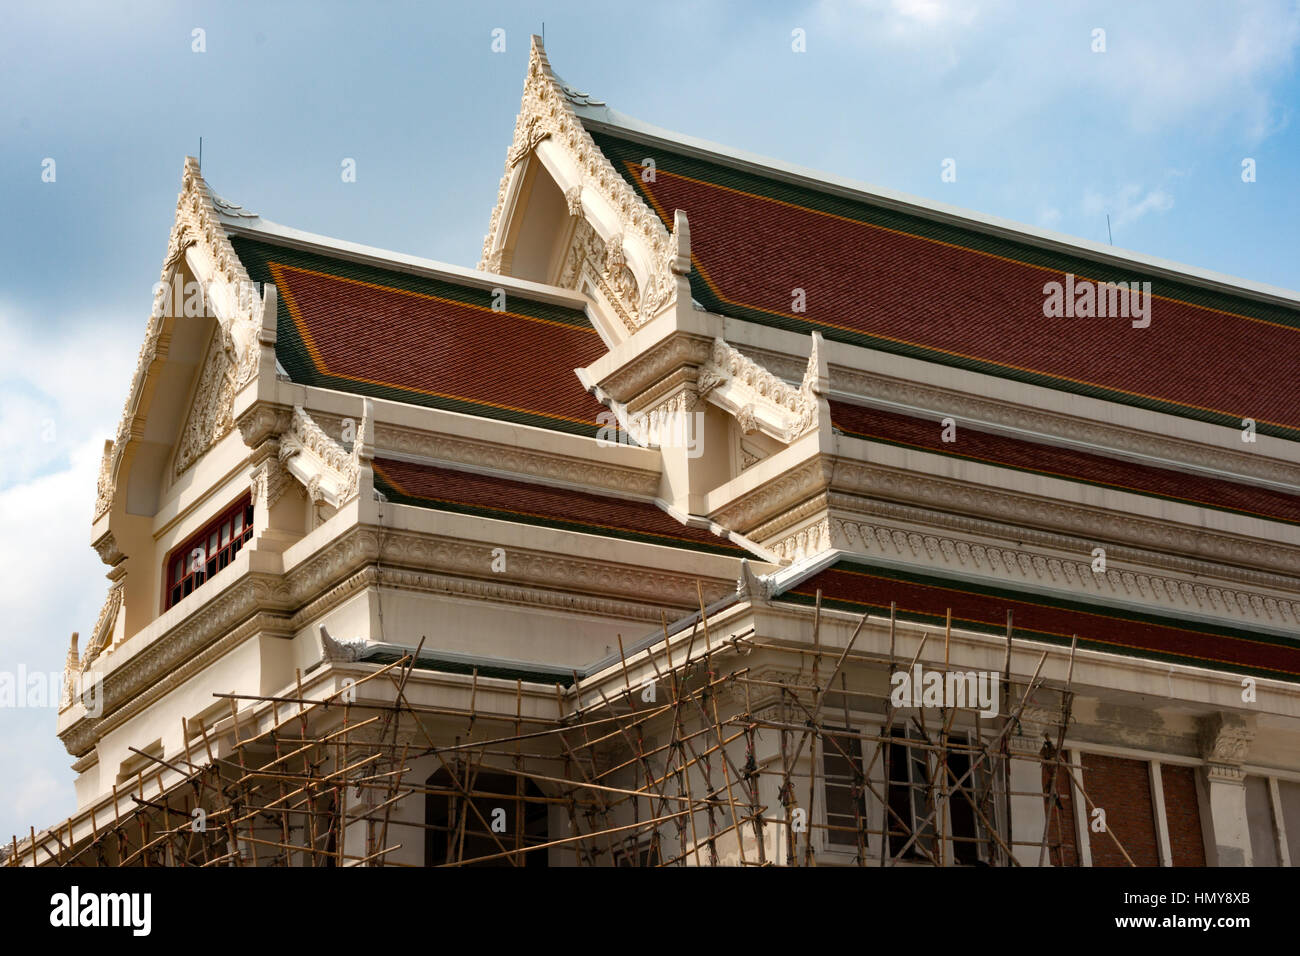 Classica architettura tailandese in un edificio nei pressi della Facoltà di Lettere dell'università di Chulalongkorn a Bangkok, Tailandia. Foto Stock